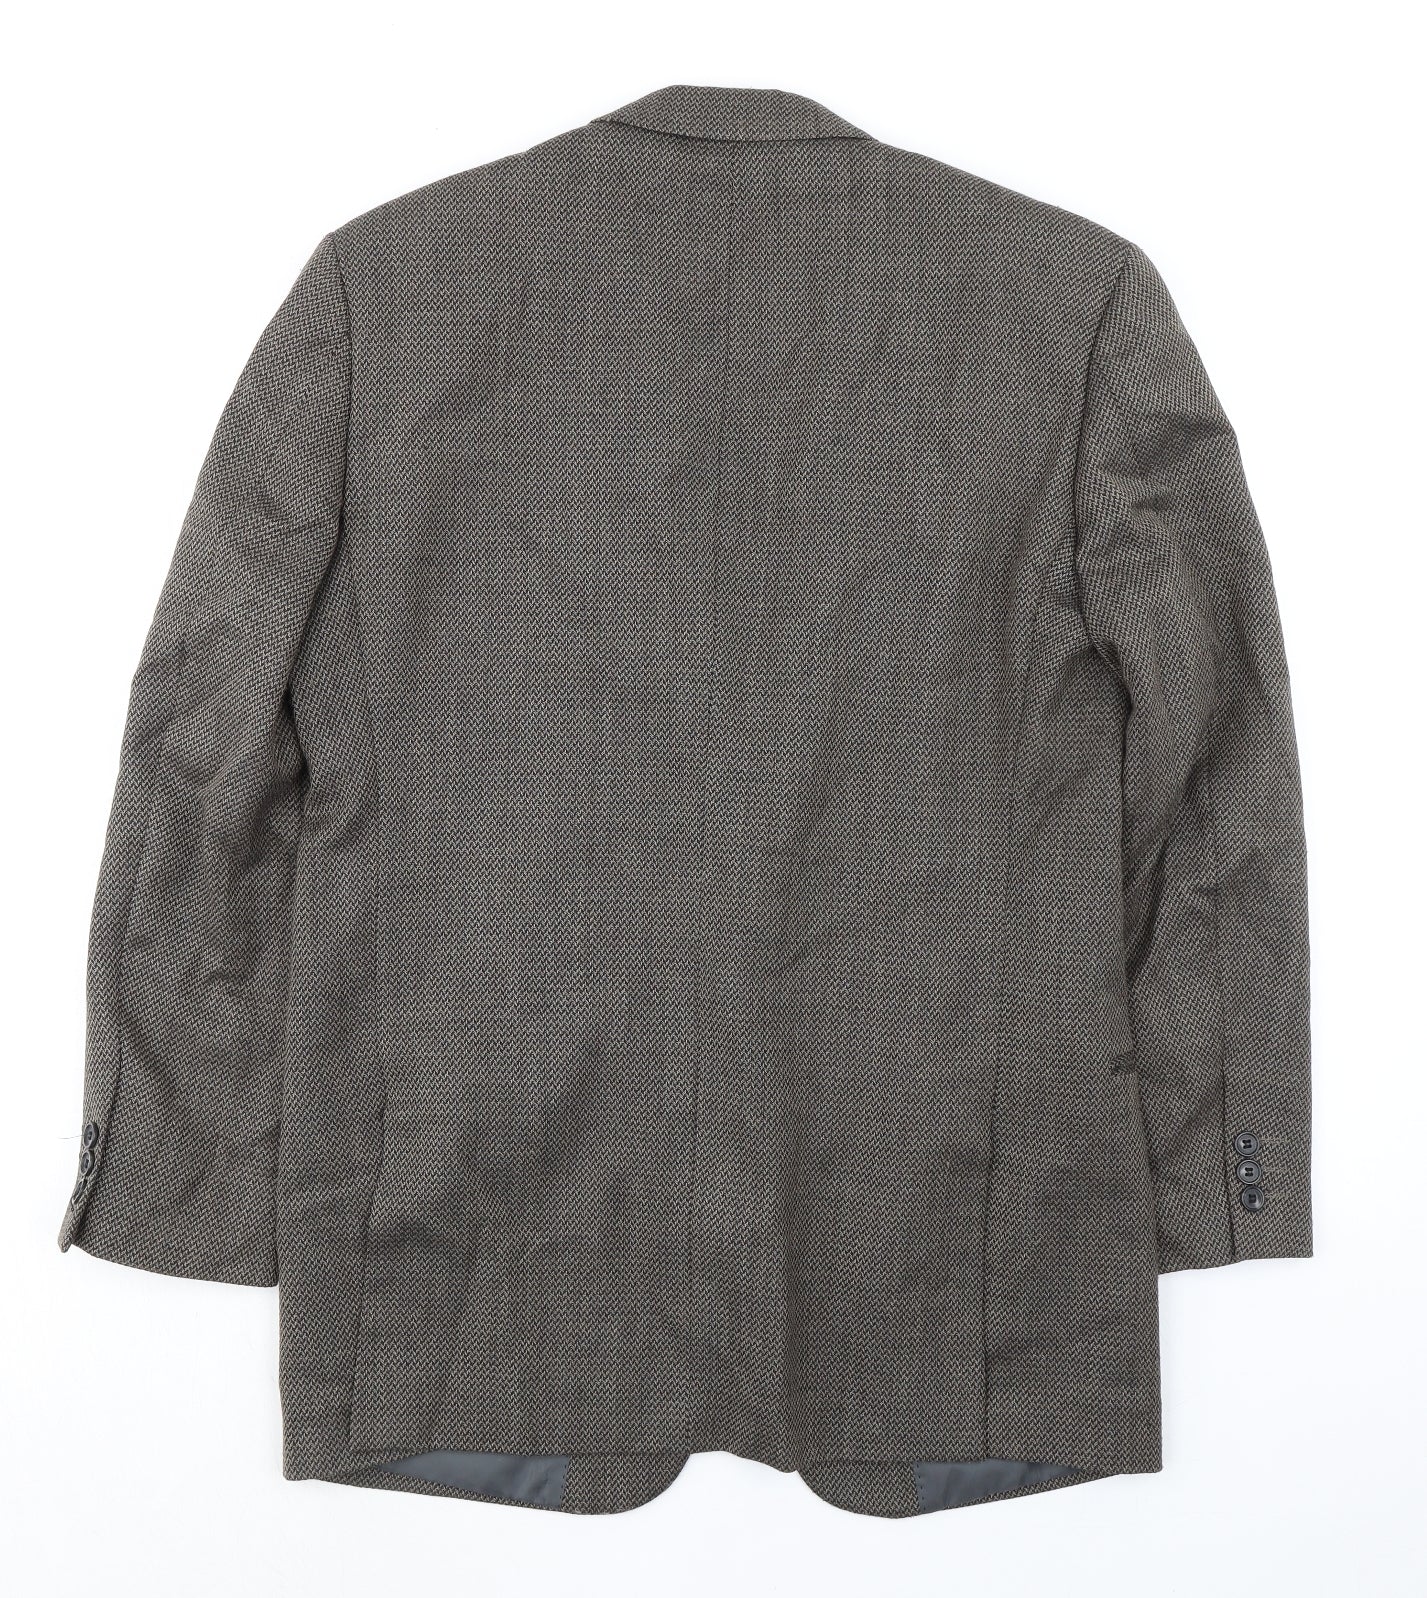 Skopes Mens Grey Polyester Jacket Suit Jacket Size 38 Regular